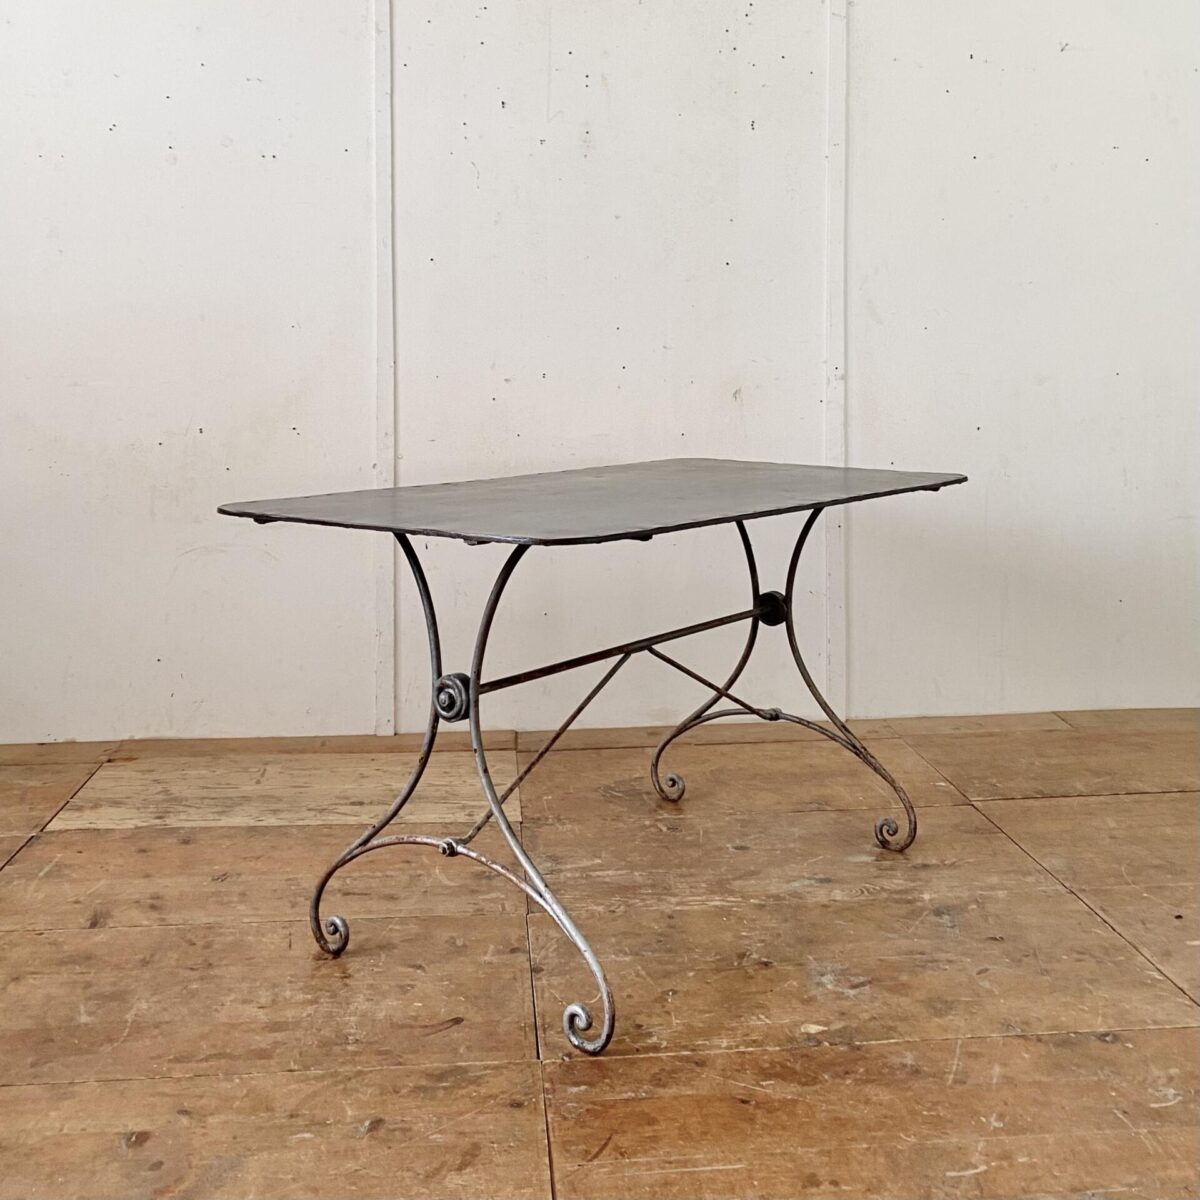 Deuxieme.shop Jugendstil Gartentisch. 140x75cm Höhe 75cm. Der Tisch ist in stabilem Zustand, das Tischblatt ist gereinigt und mit Rostschutz Klarlack lackiert. 